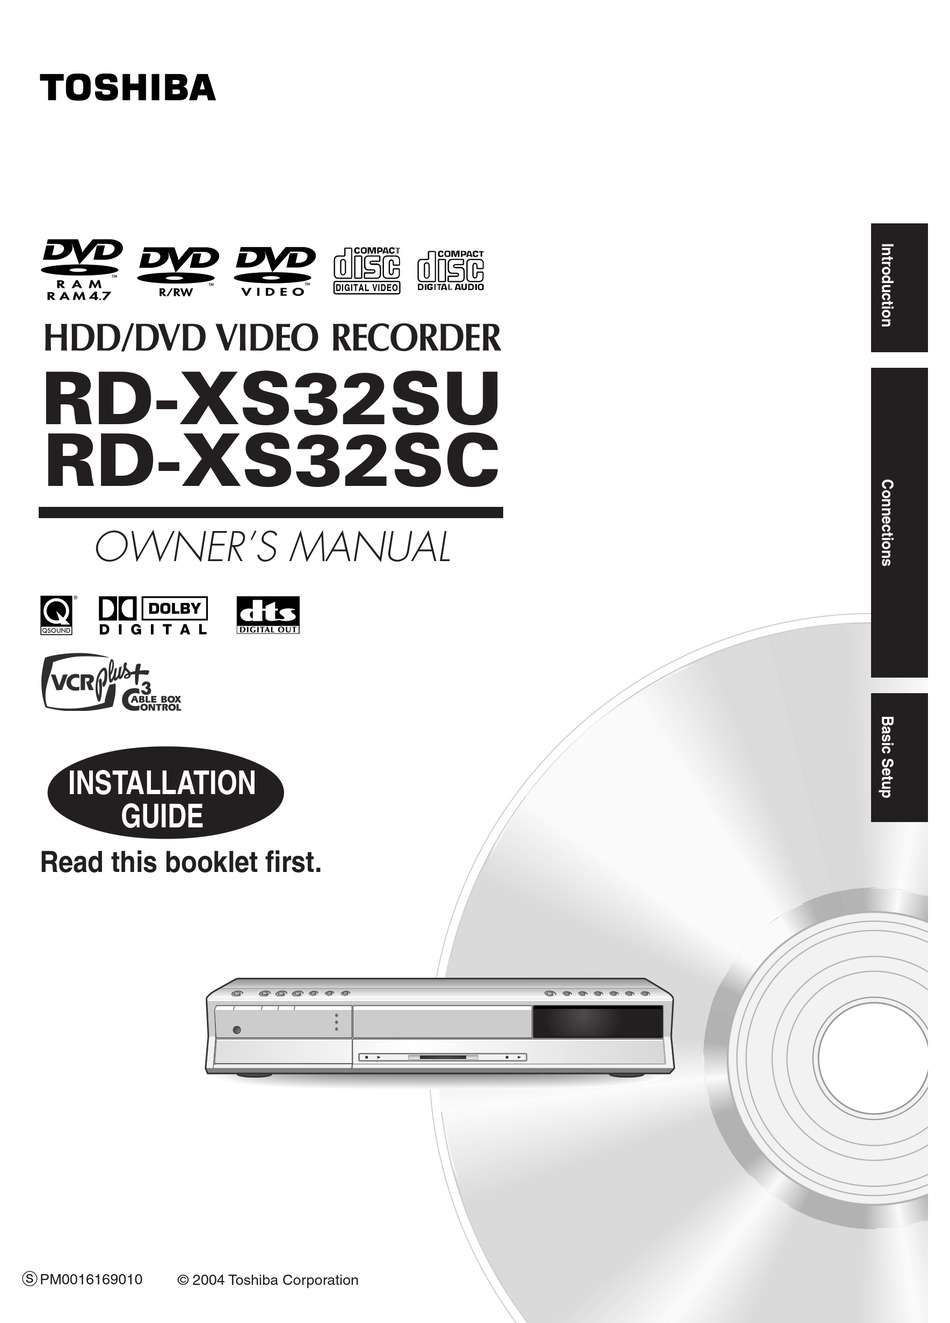 訳あり商品 TOSHIBA DVDレコーダー RD-XS32